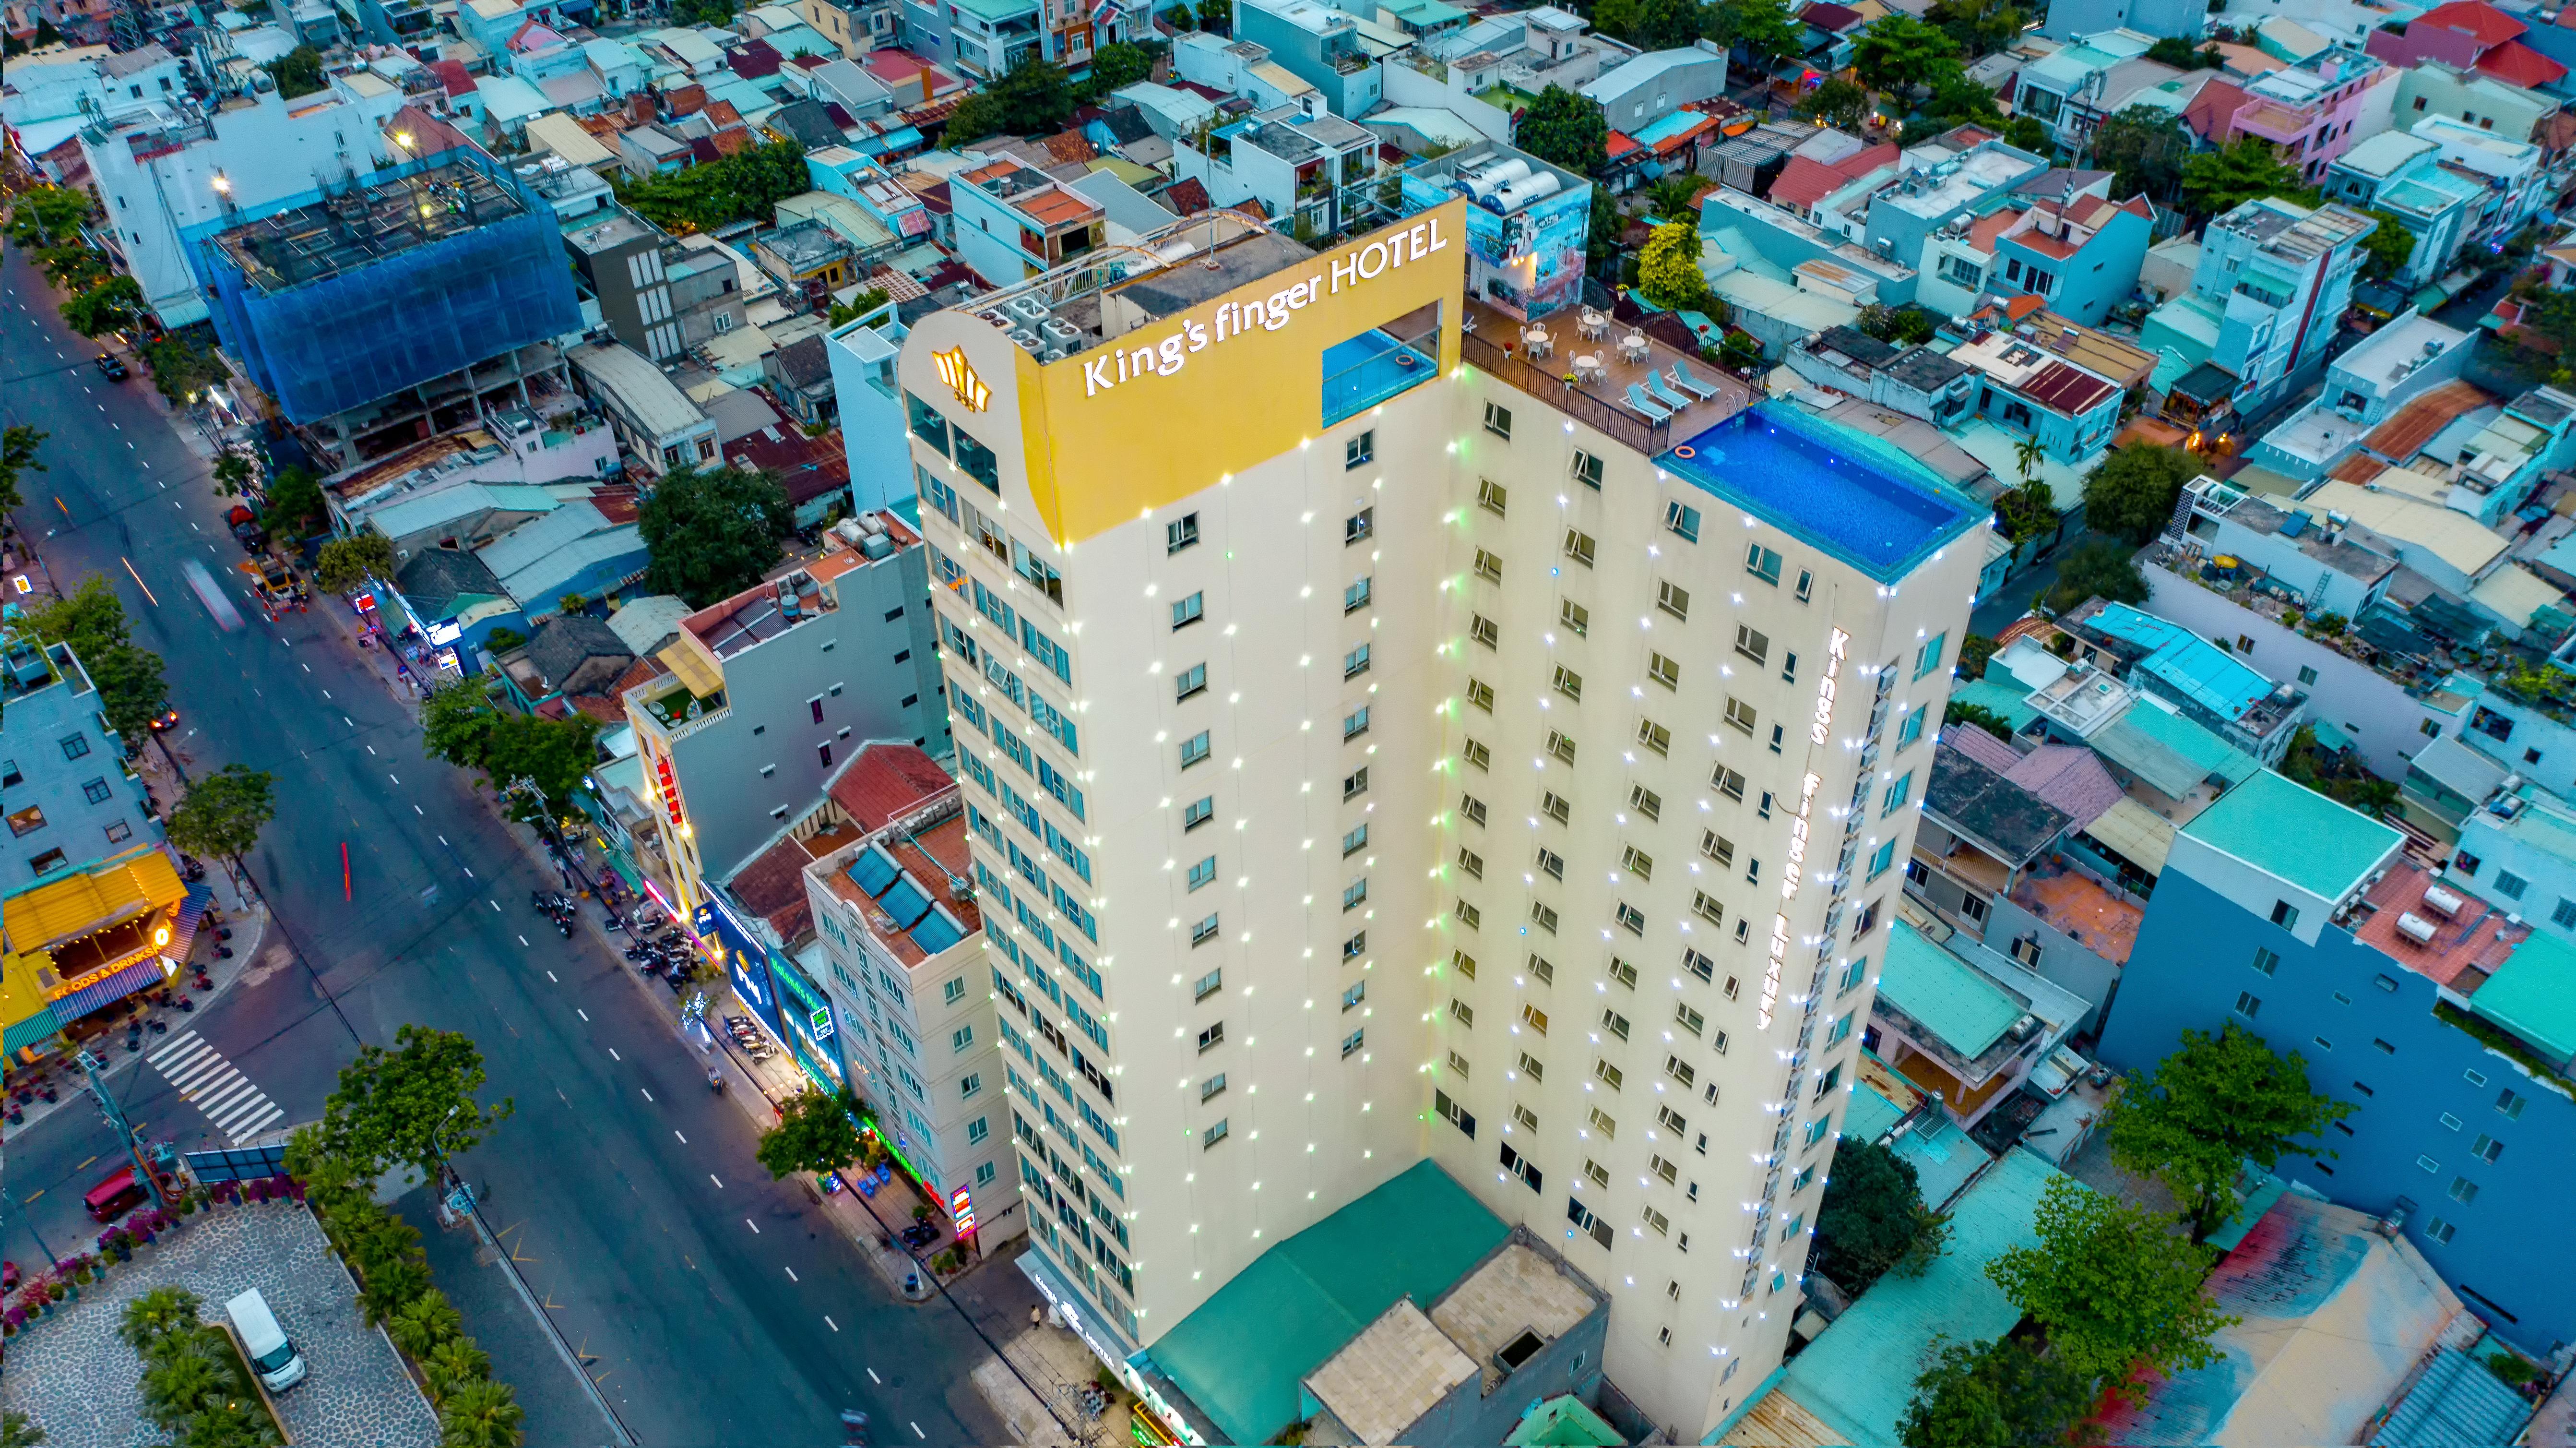 Khách sạn FIVITEL King Đà Nẵng Ngoại thất bức ảnh